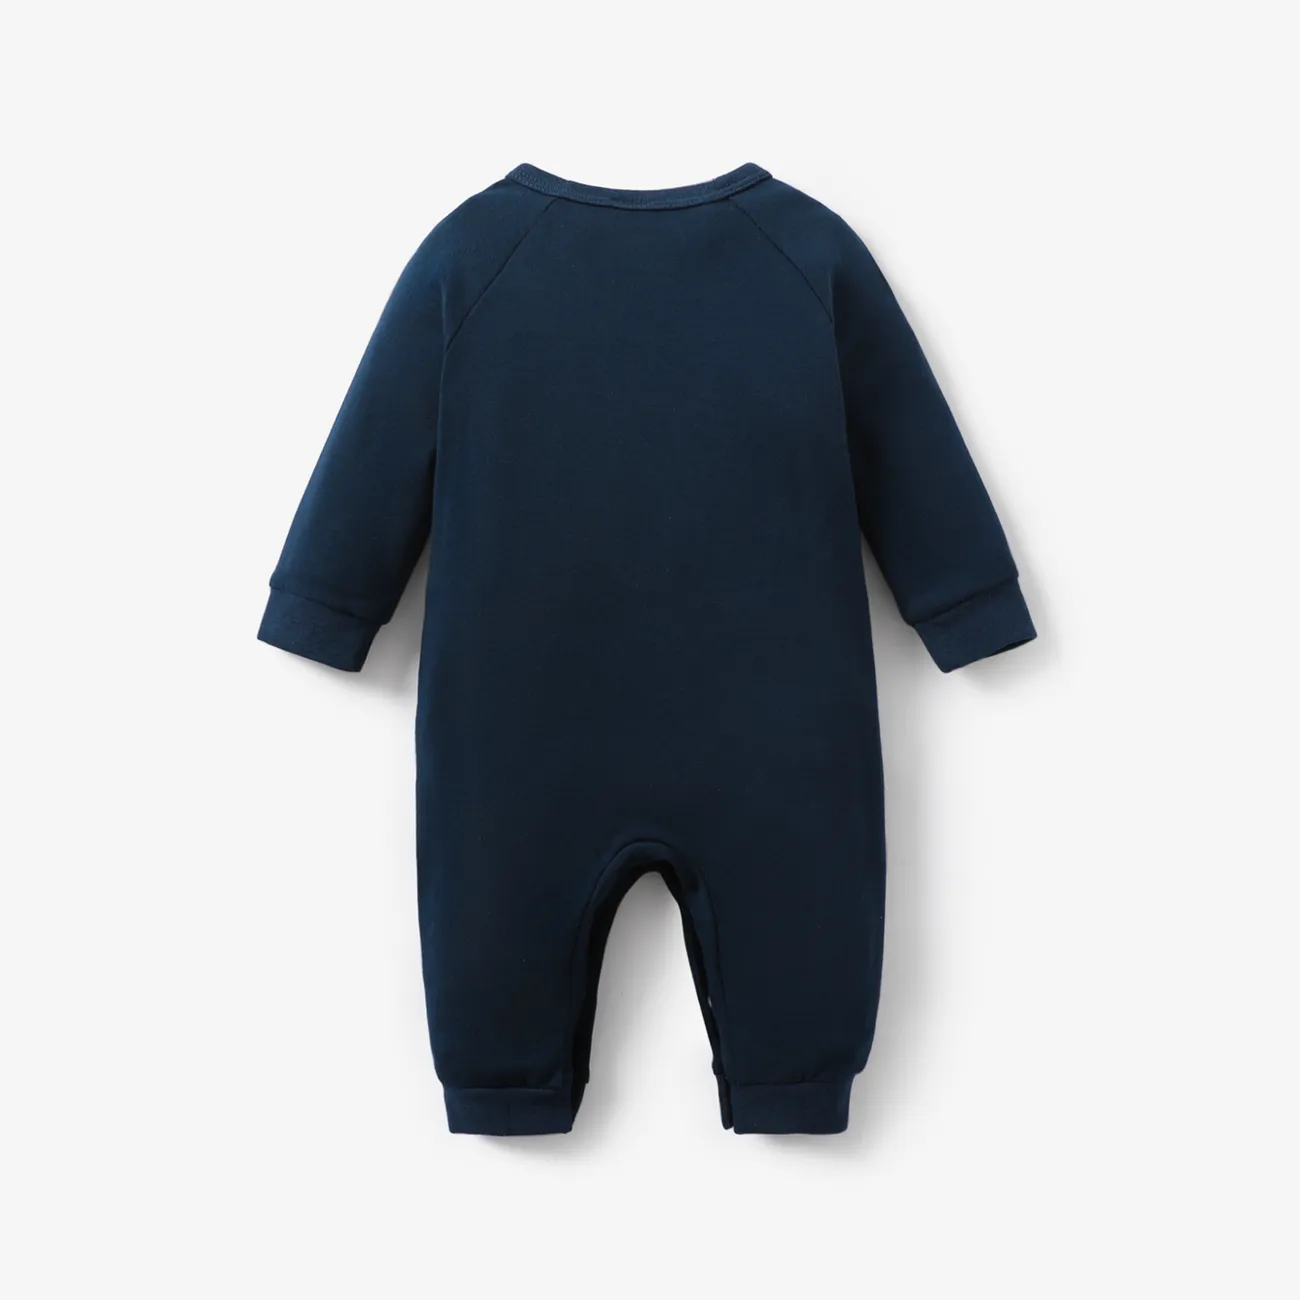 Baby Jungen Knöpfe Lässig Langärmelig Baby-Overalls dunkelblau big image 1